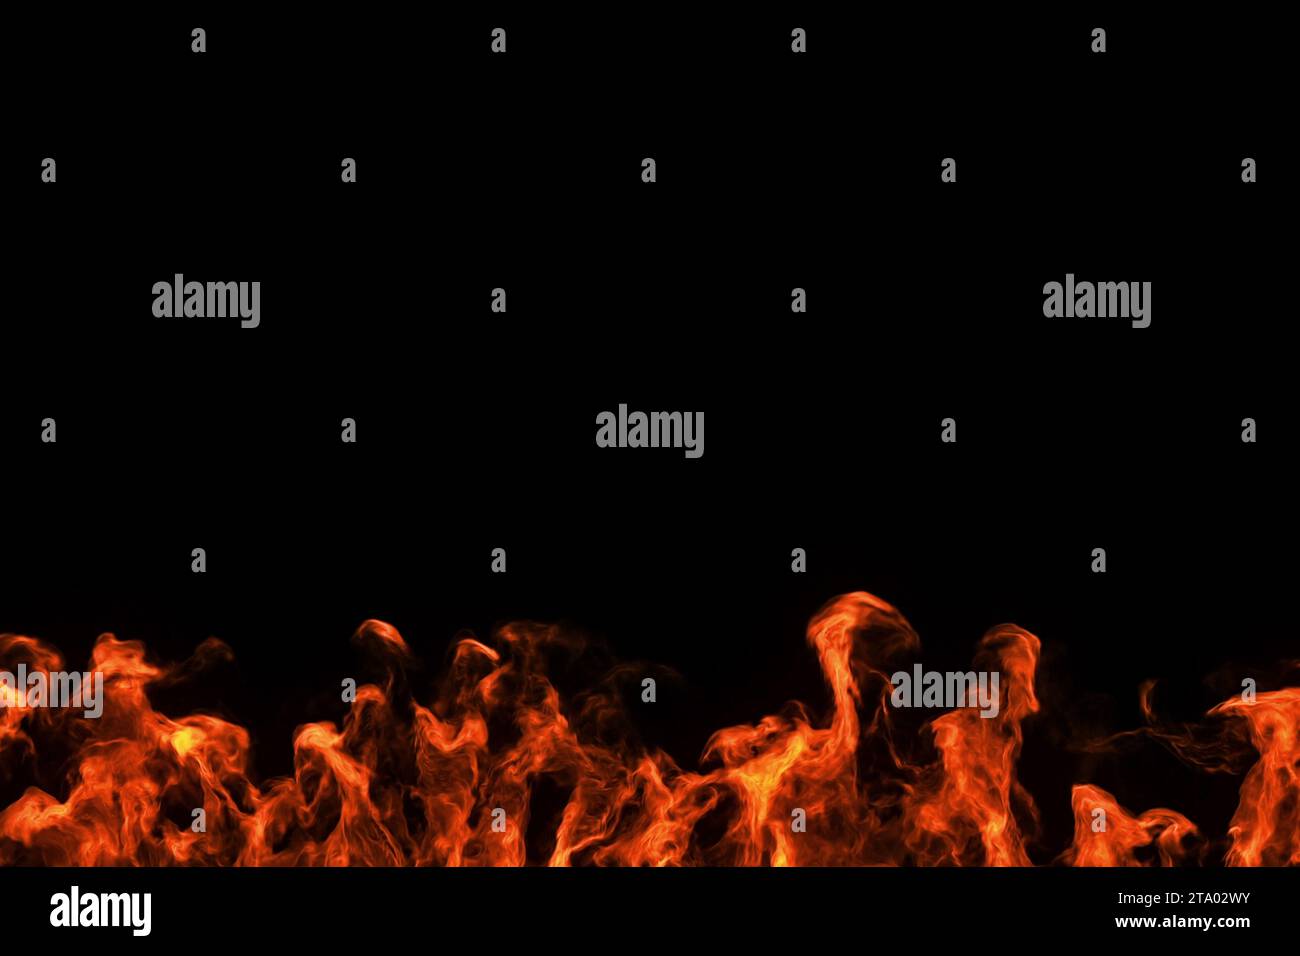 le fiamme da fuoco realistiche bruciano l'immagine del movimento su sfondo nero Foto Stock